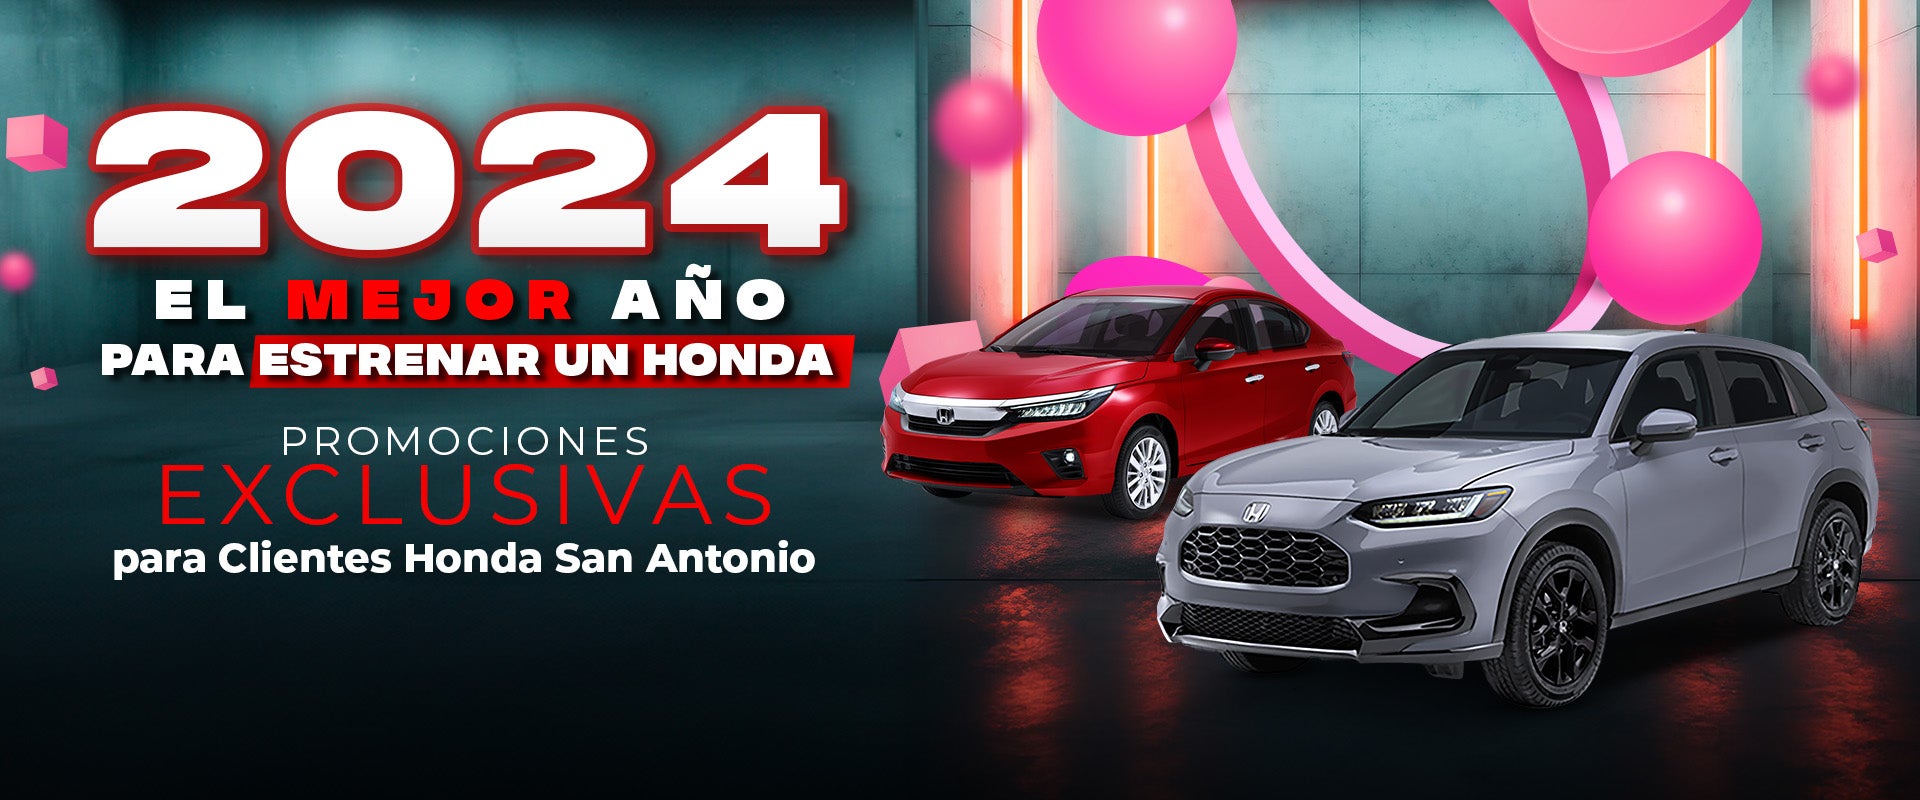 Honda San Antonio Estrena